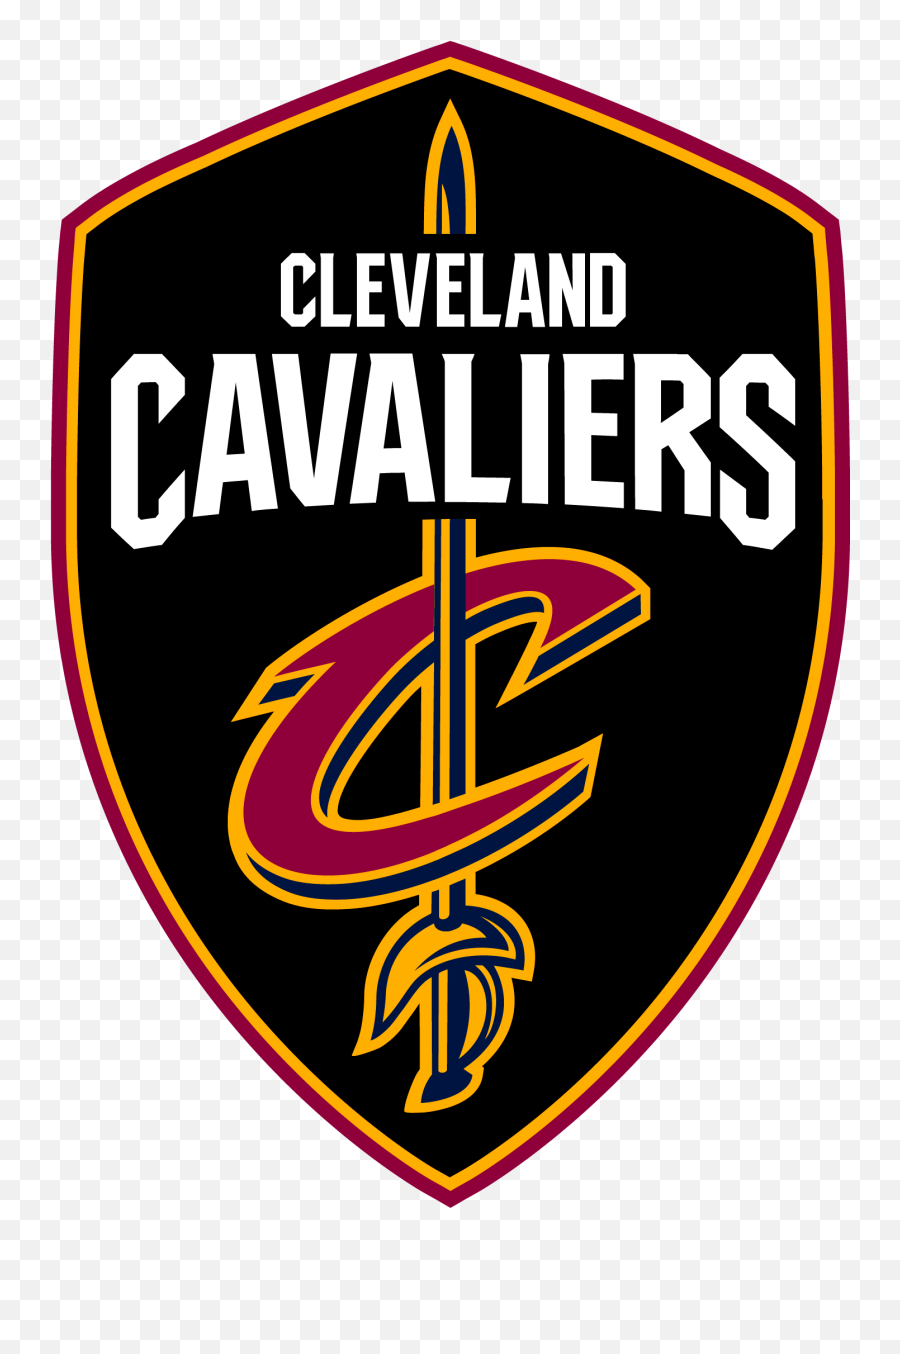 Cleveland Cavaliers Logos - Cleveland Cavaliers Logo Png,Gold Nike Logo